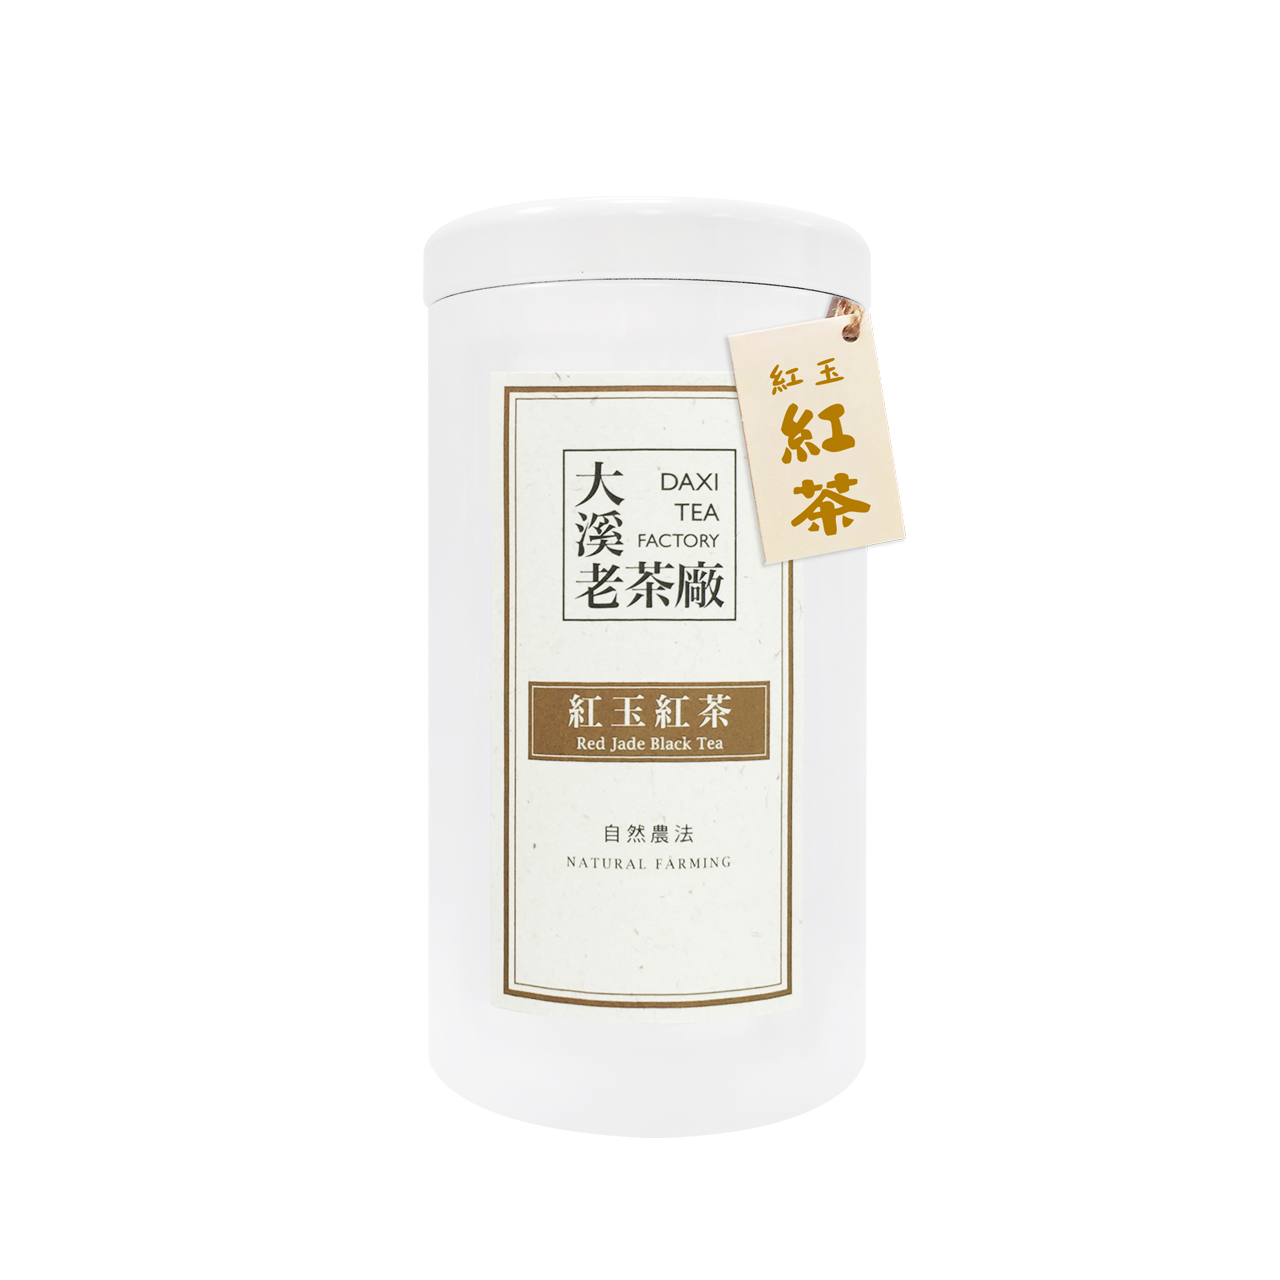 大溪-紅玉紅茶70g(自然農法)